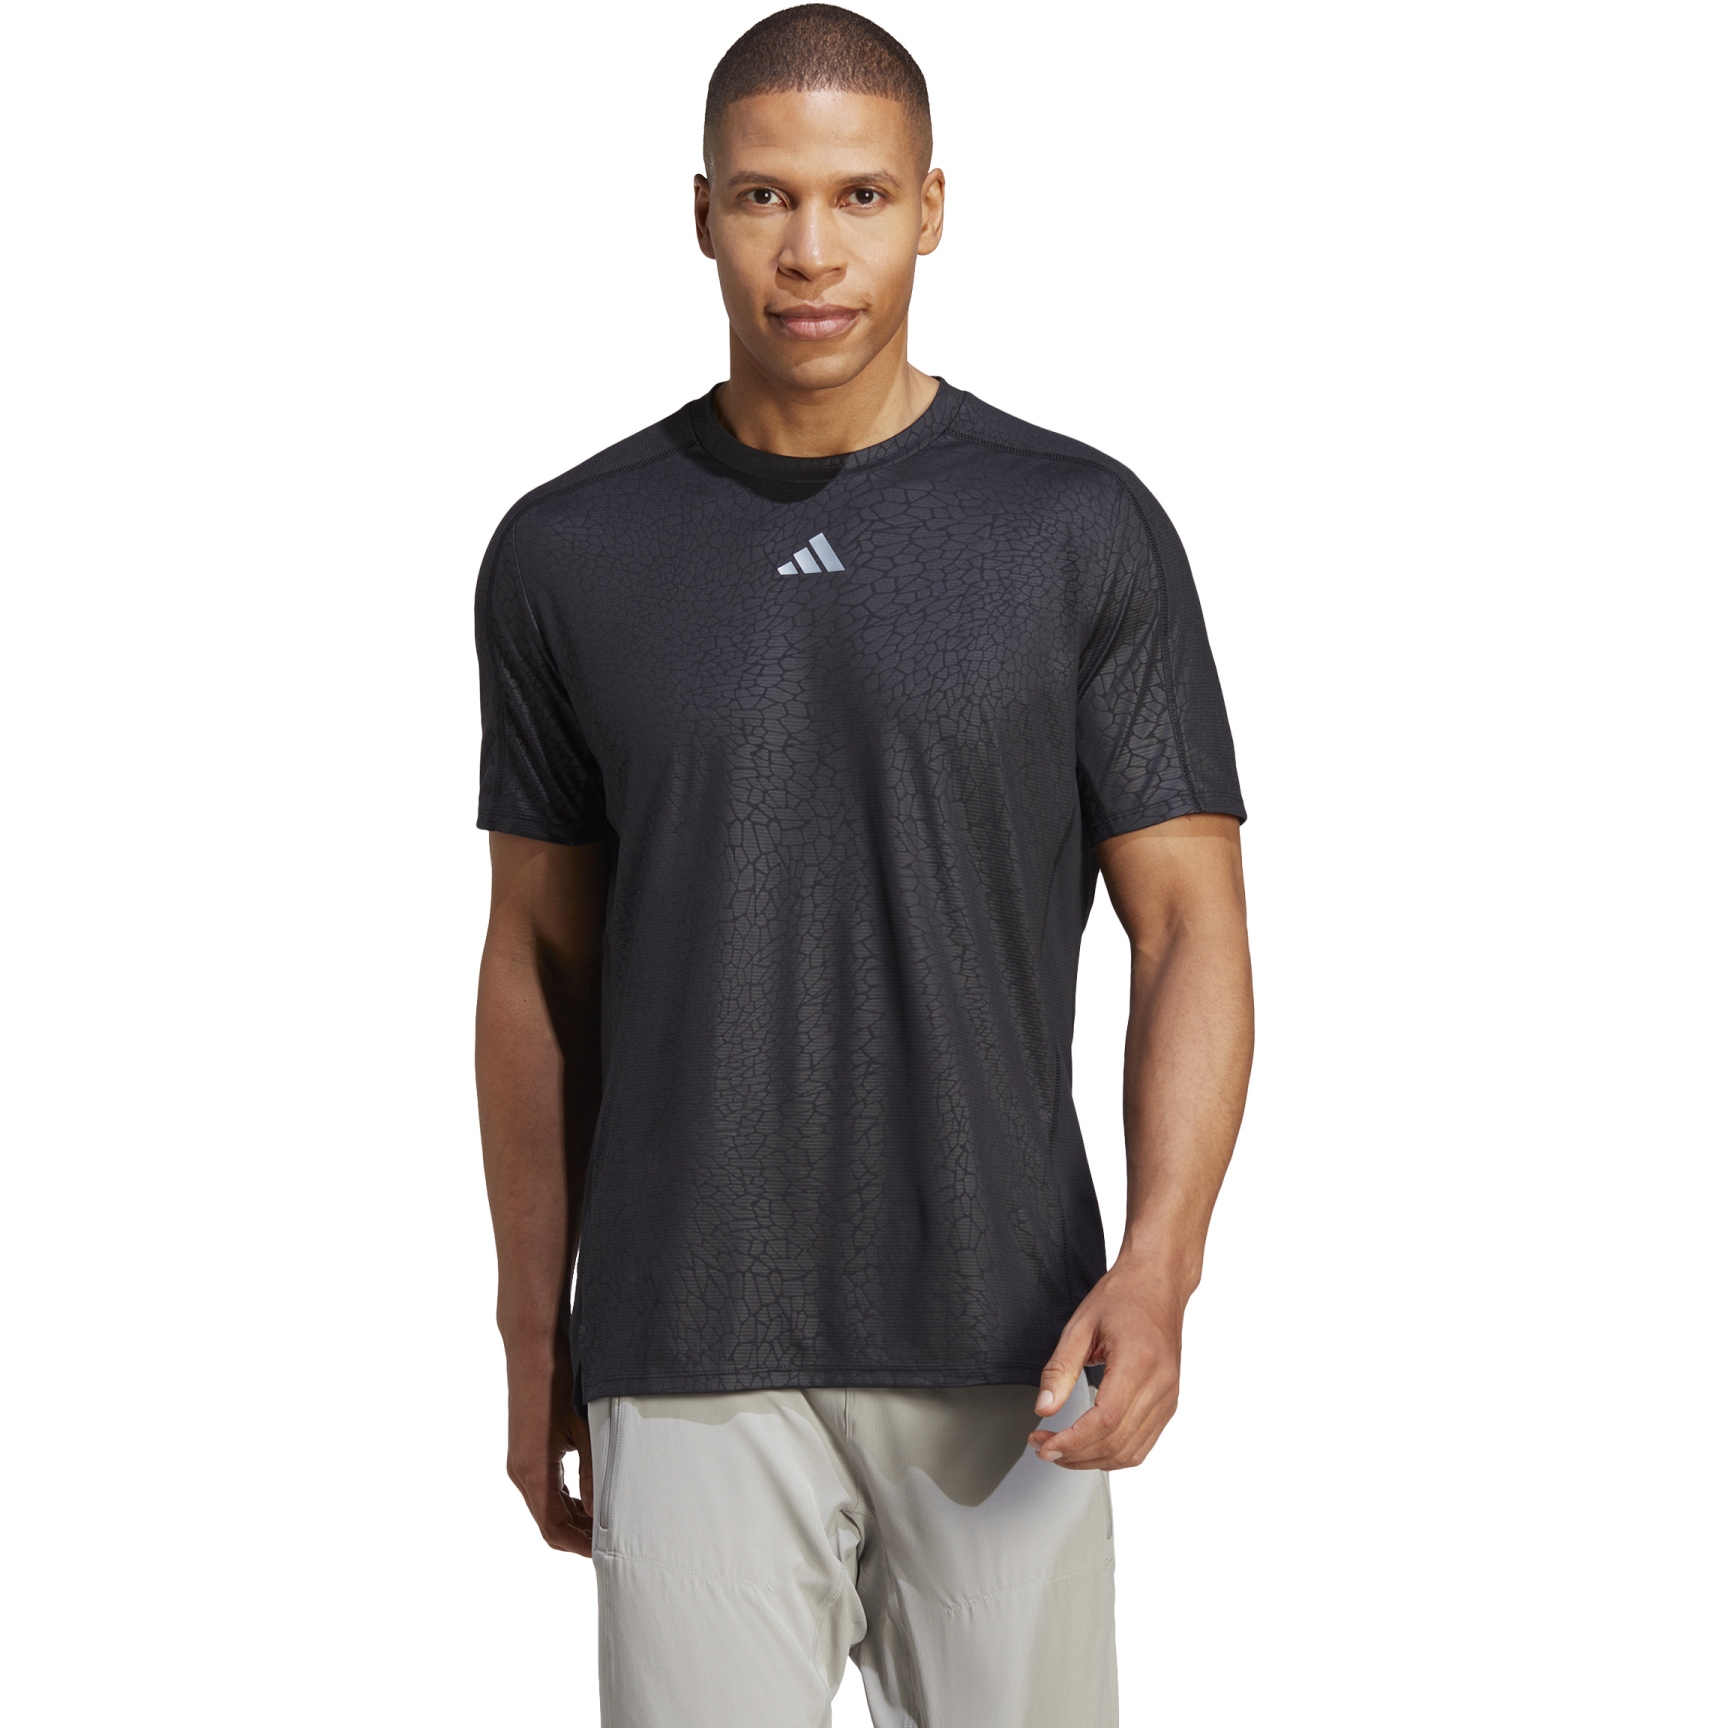 Produktbild von adidas Workout PU Print T-Shirt Herren - schwarz HS7509